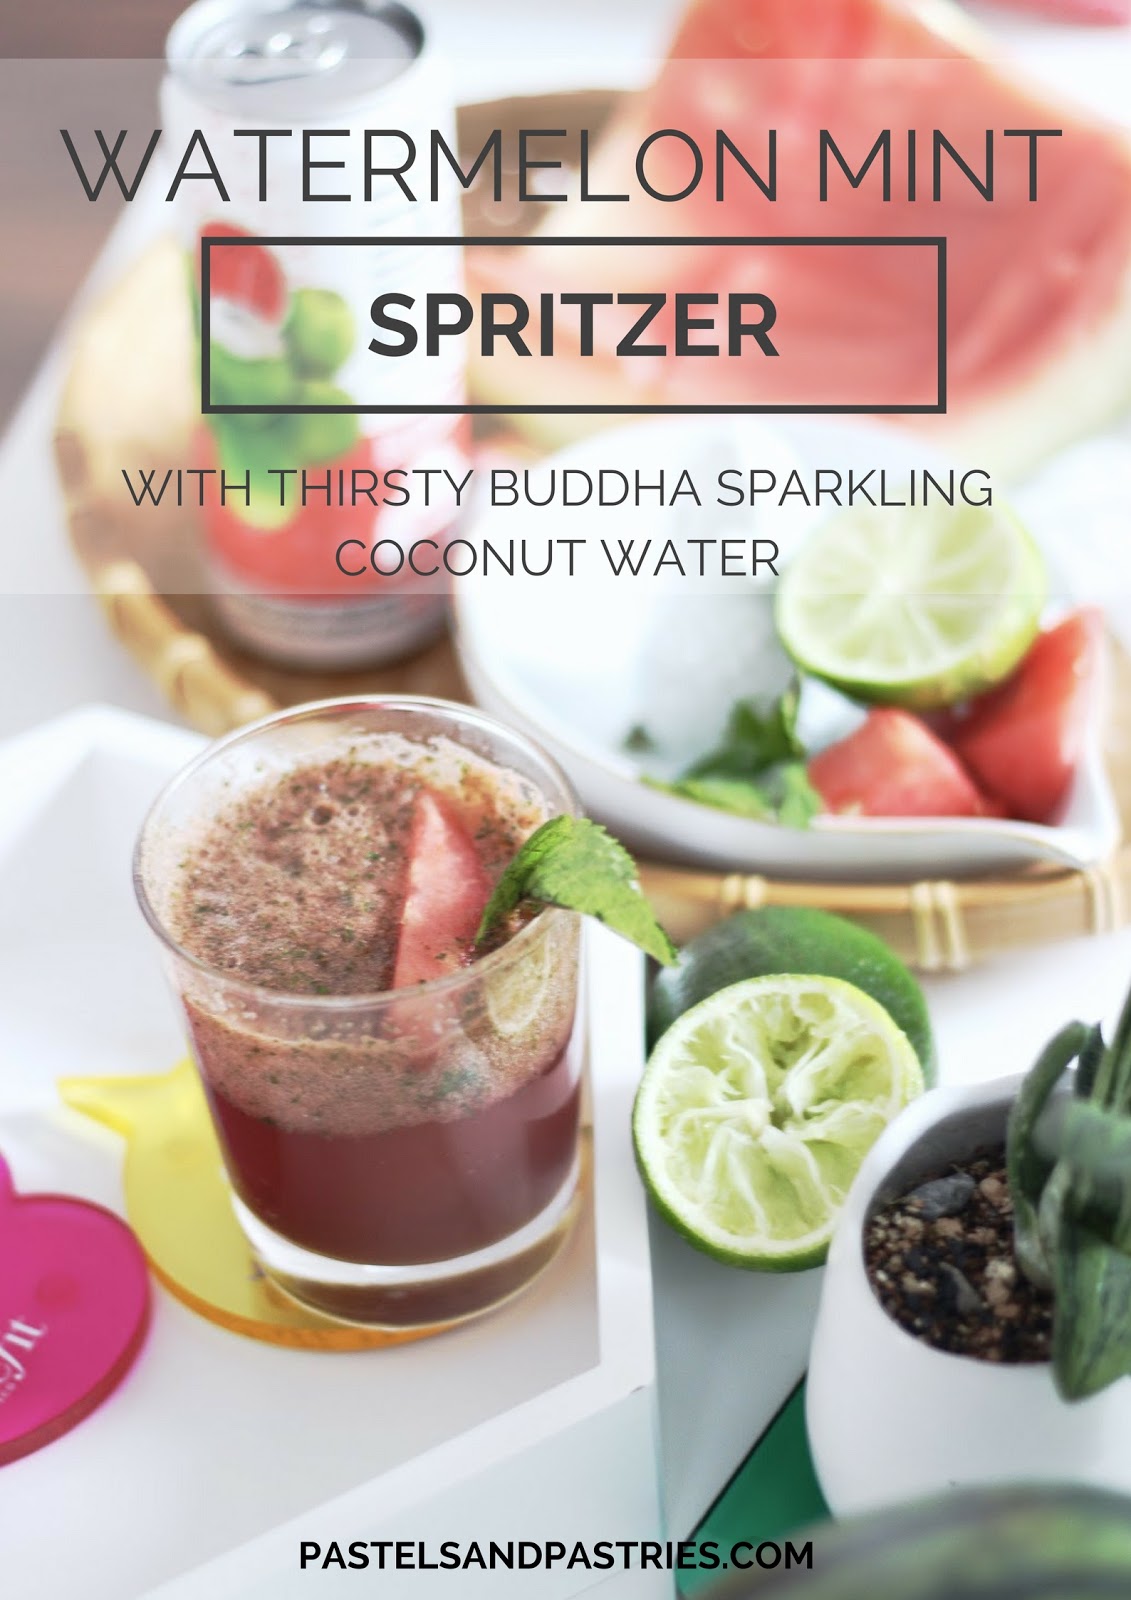 Thirsty Buddha Sparkling Watermelon Coconut Water Spritzer - Summer entertaining 